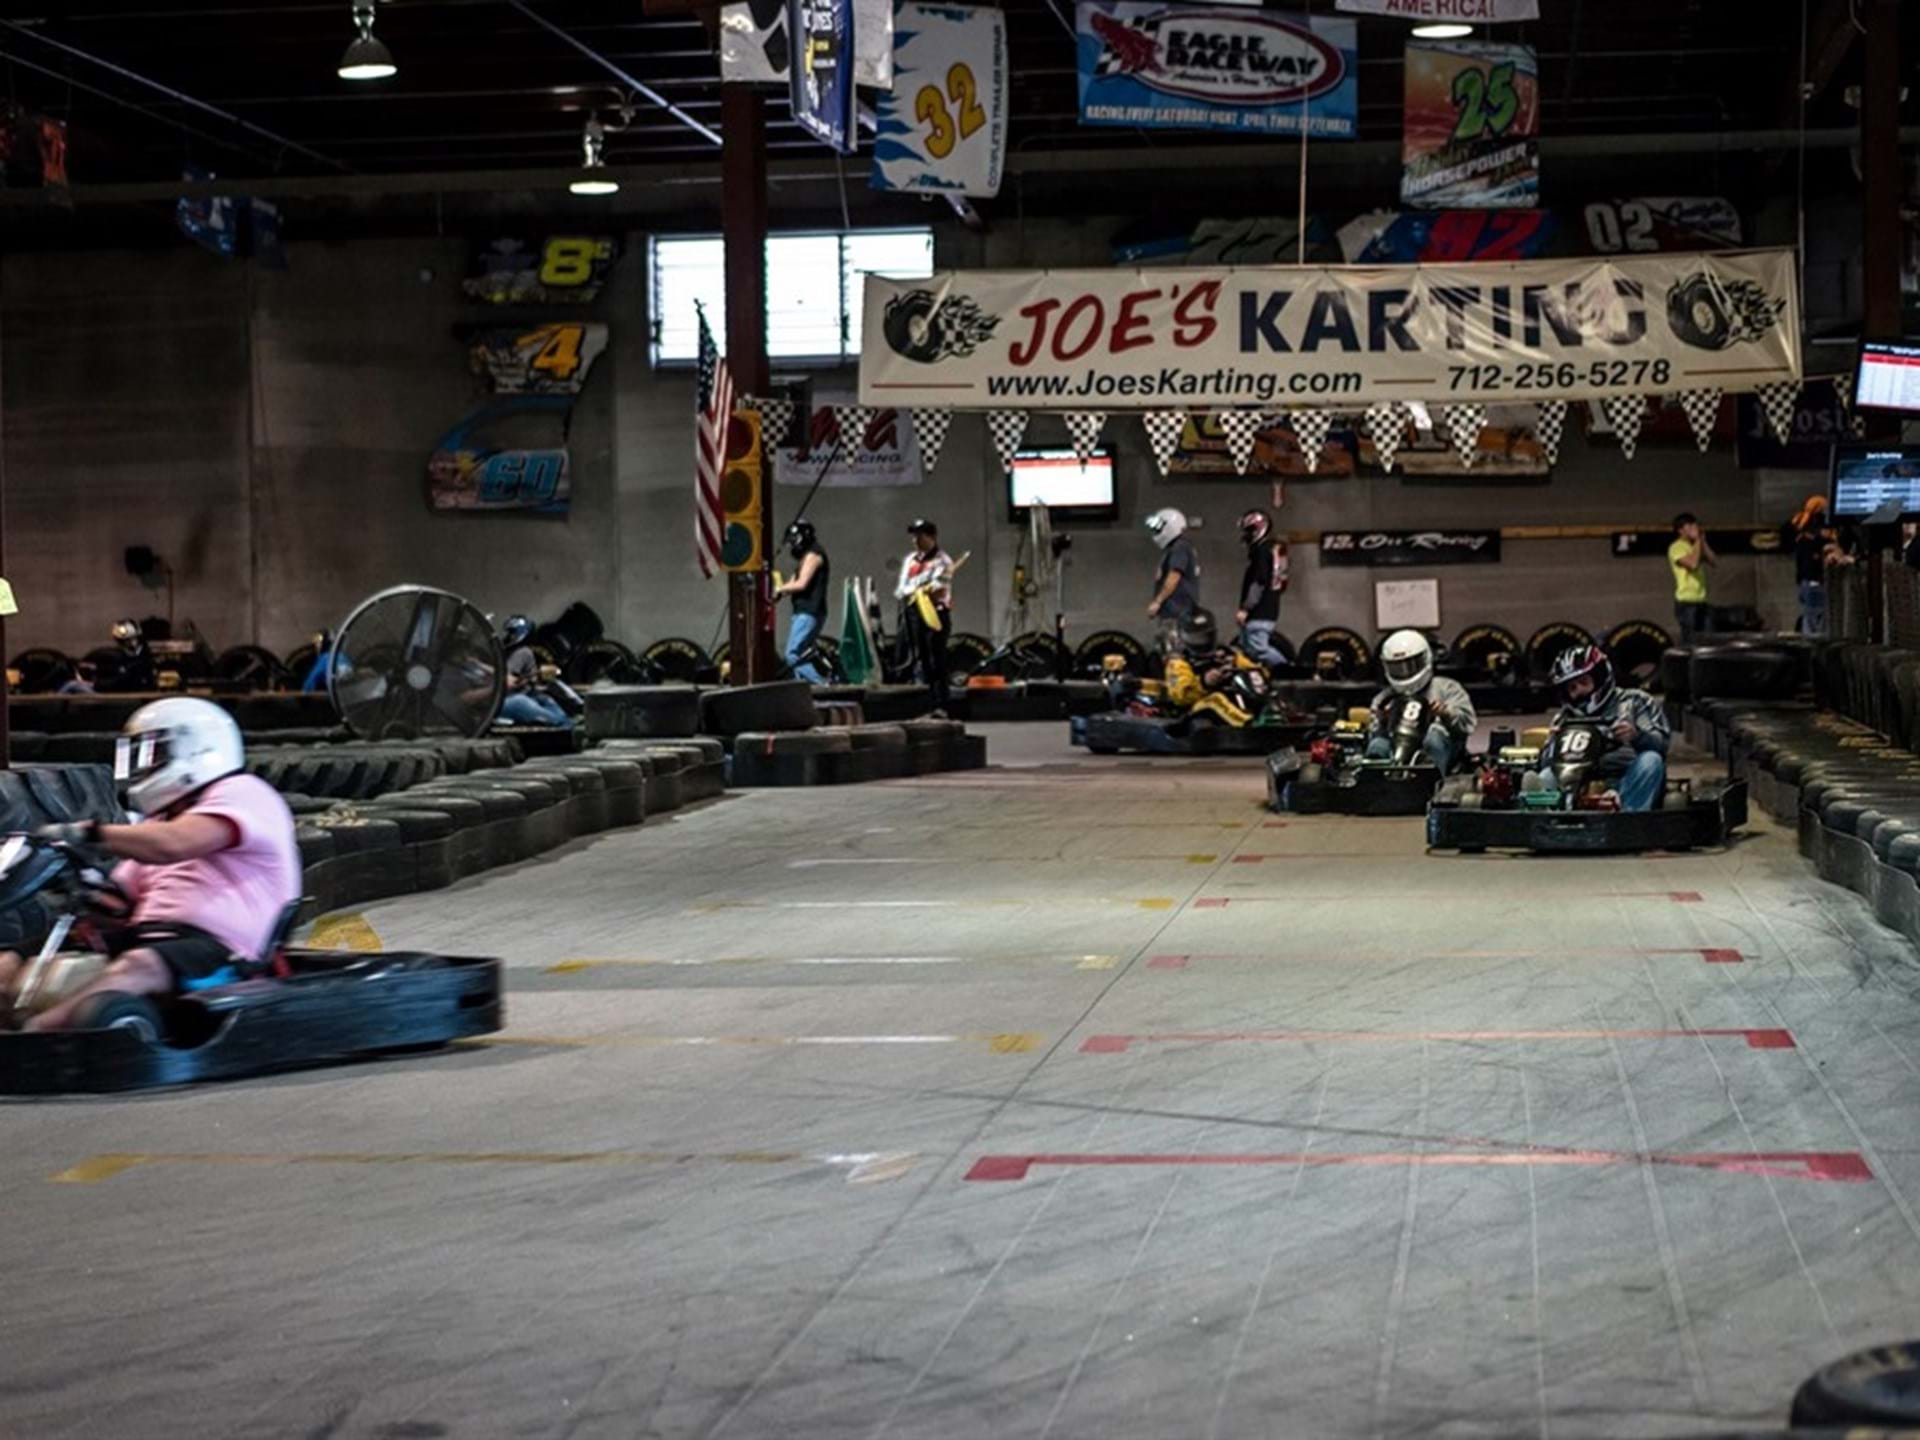 Joe's Karting Center